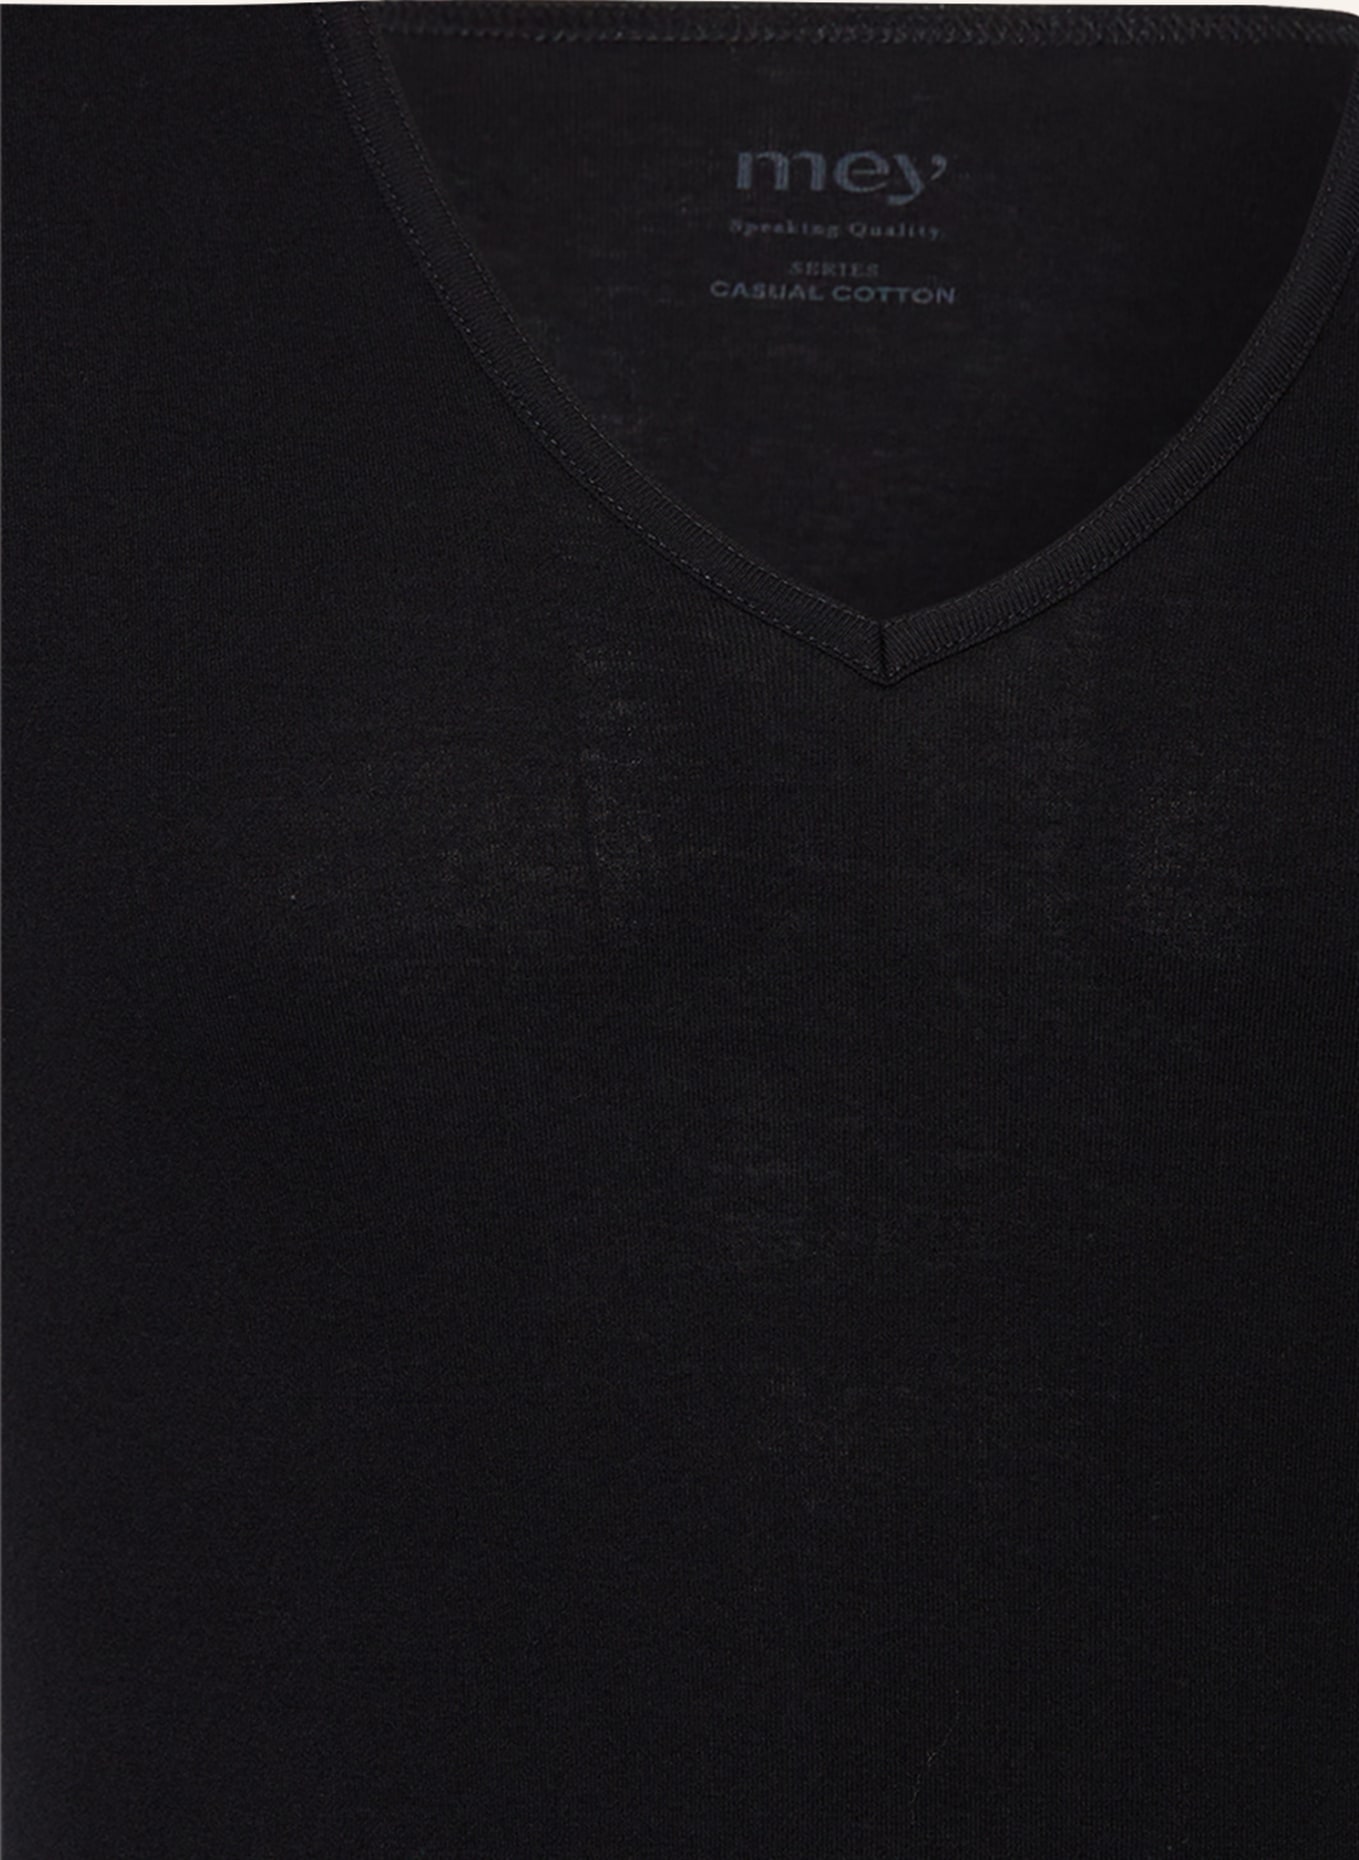 mey V-neck shirt series SENSUAL COTTON, Color: BLACK (Image 3)